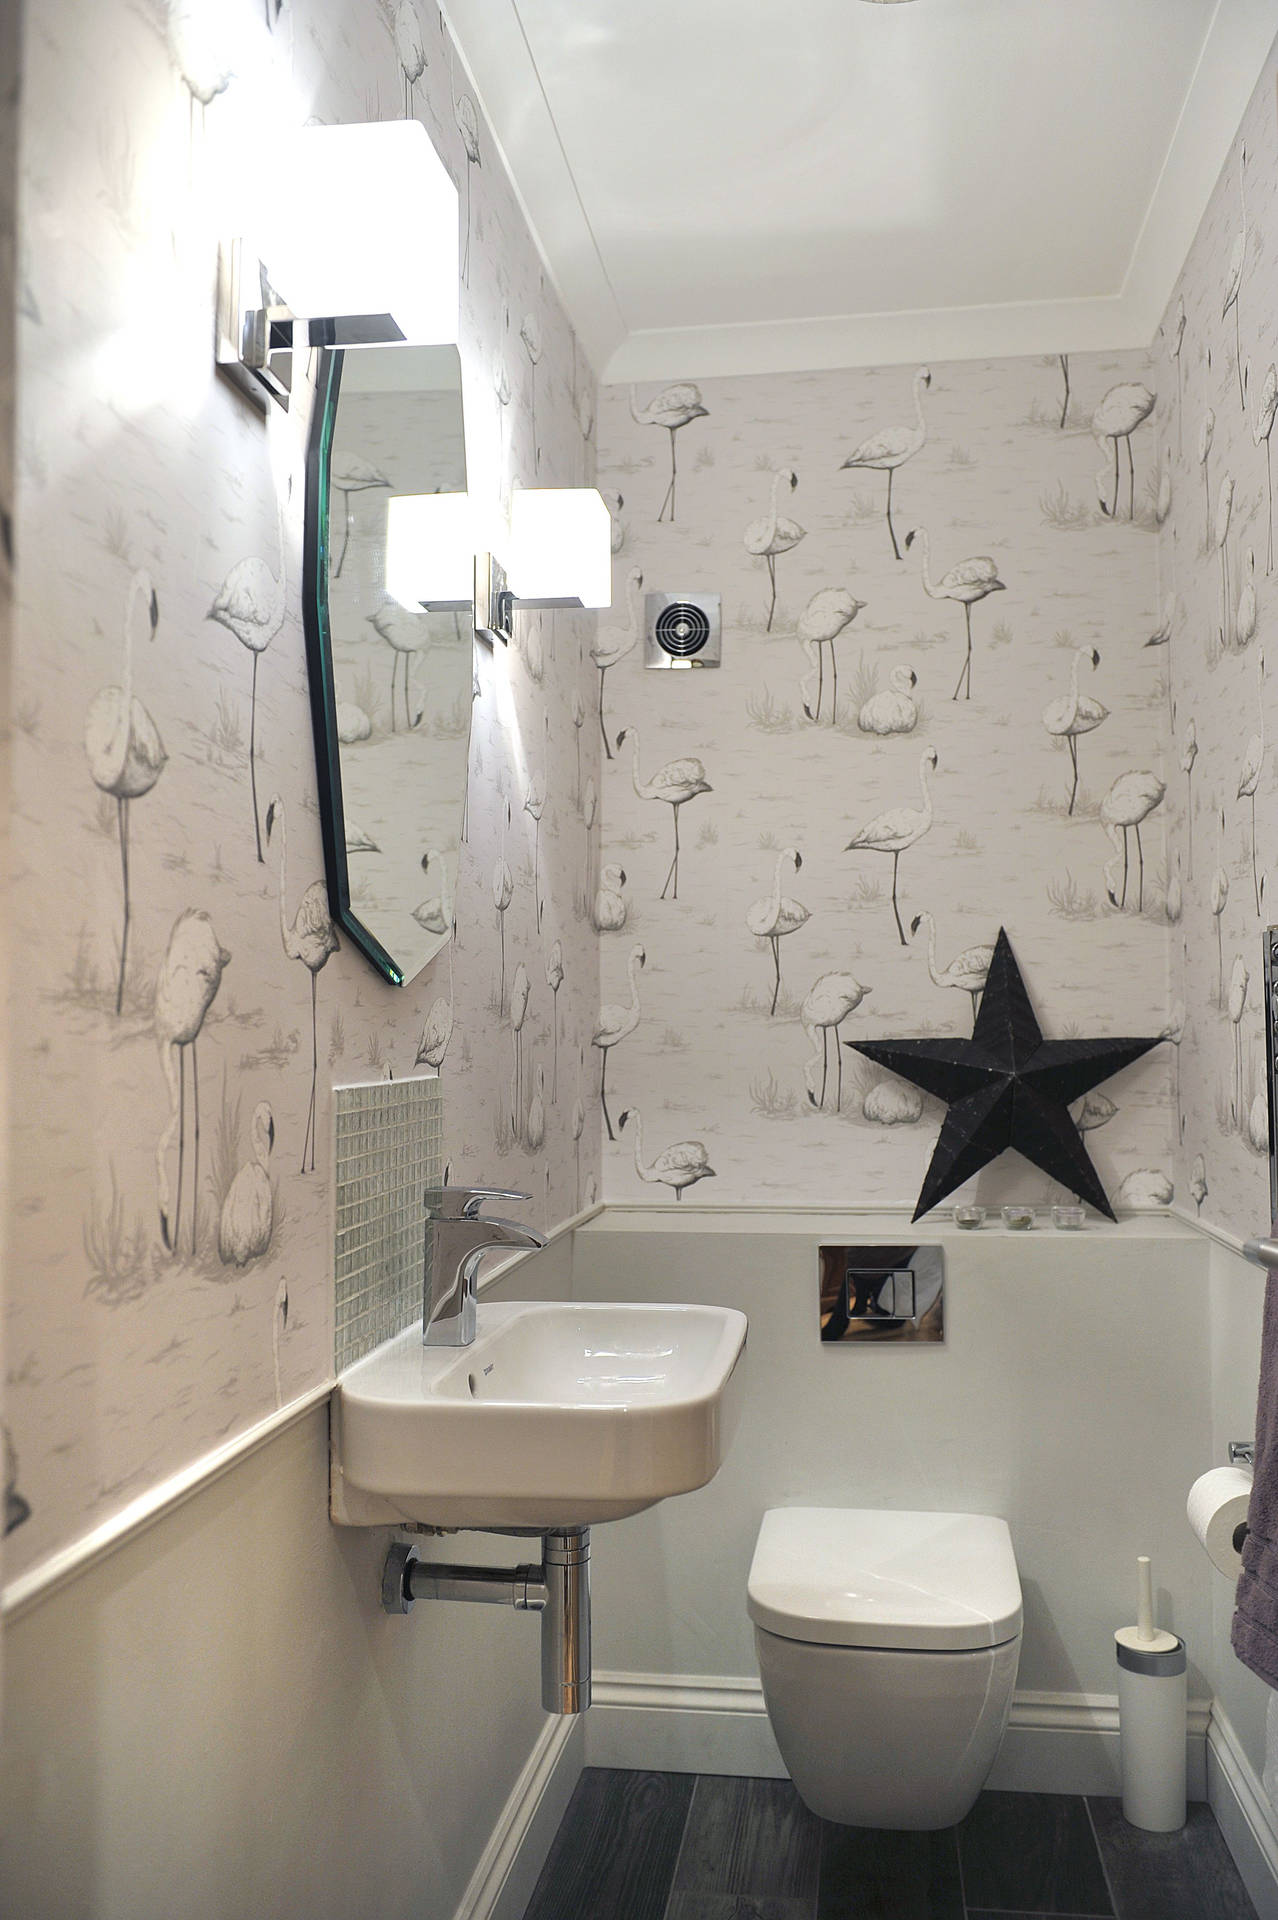 Toilettemit Flamingo Motiv In Schwarz & Weiß Wallpaper